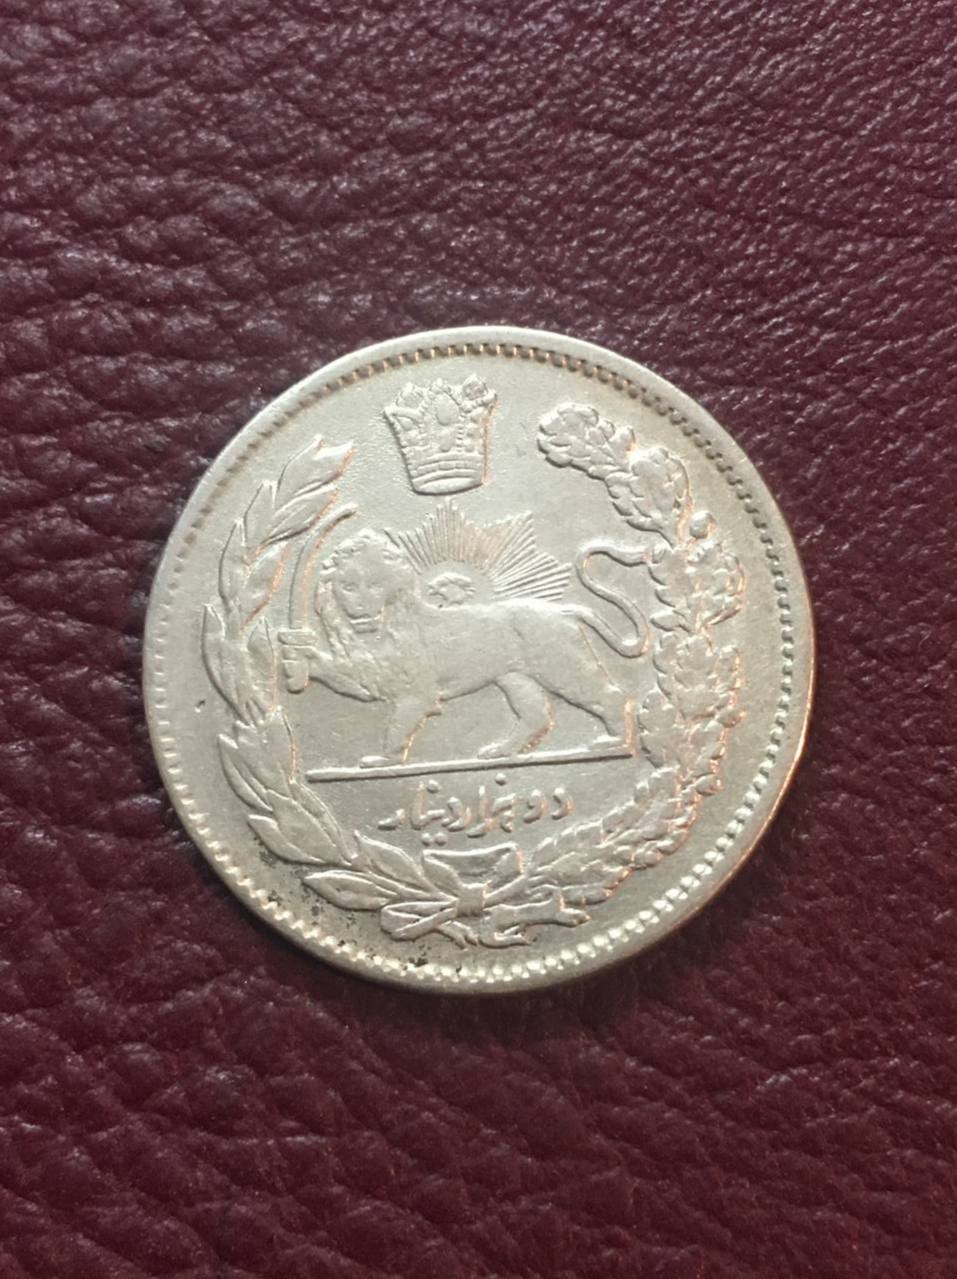 سکه نقره ٢٠٠٠ دینار تصویری مظفرالدین شاه قاجار در حد بانکی زیبا و کمیاب